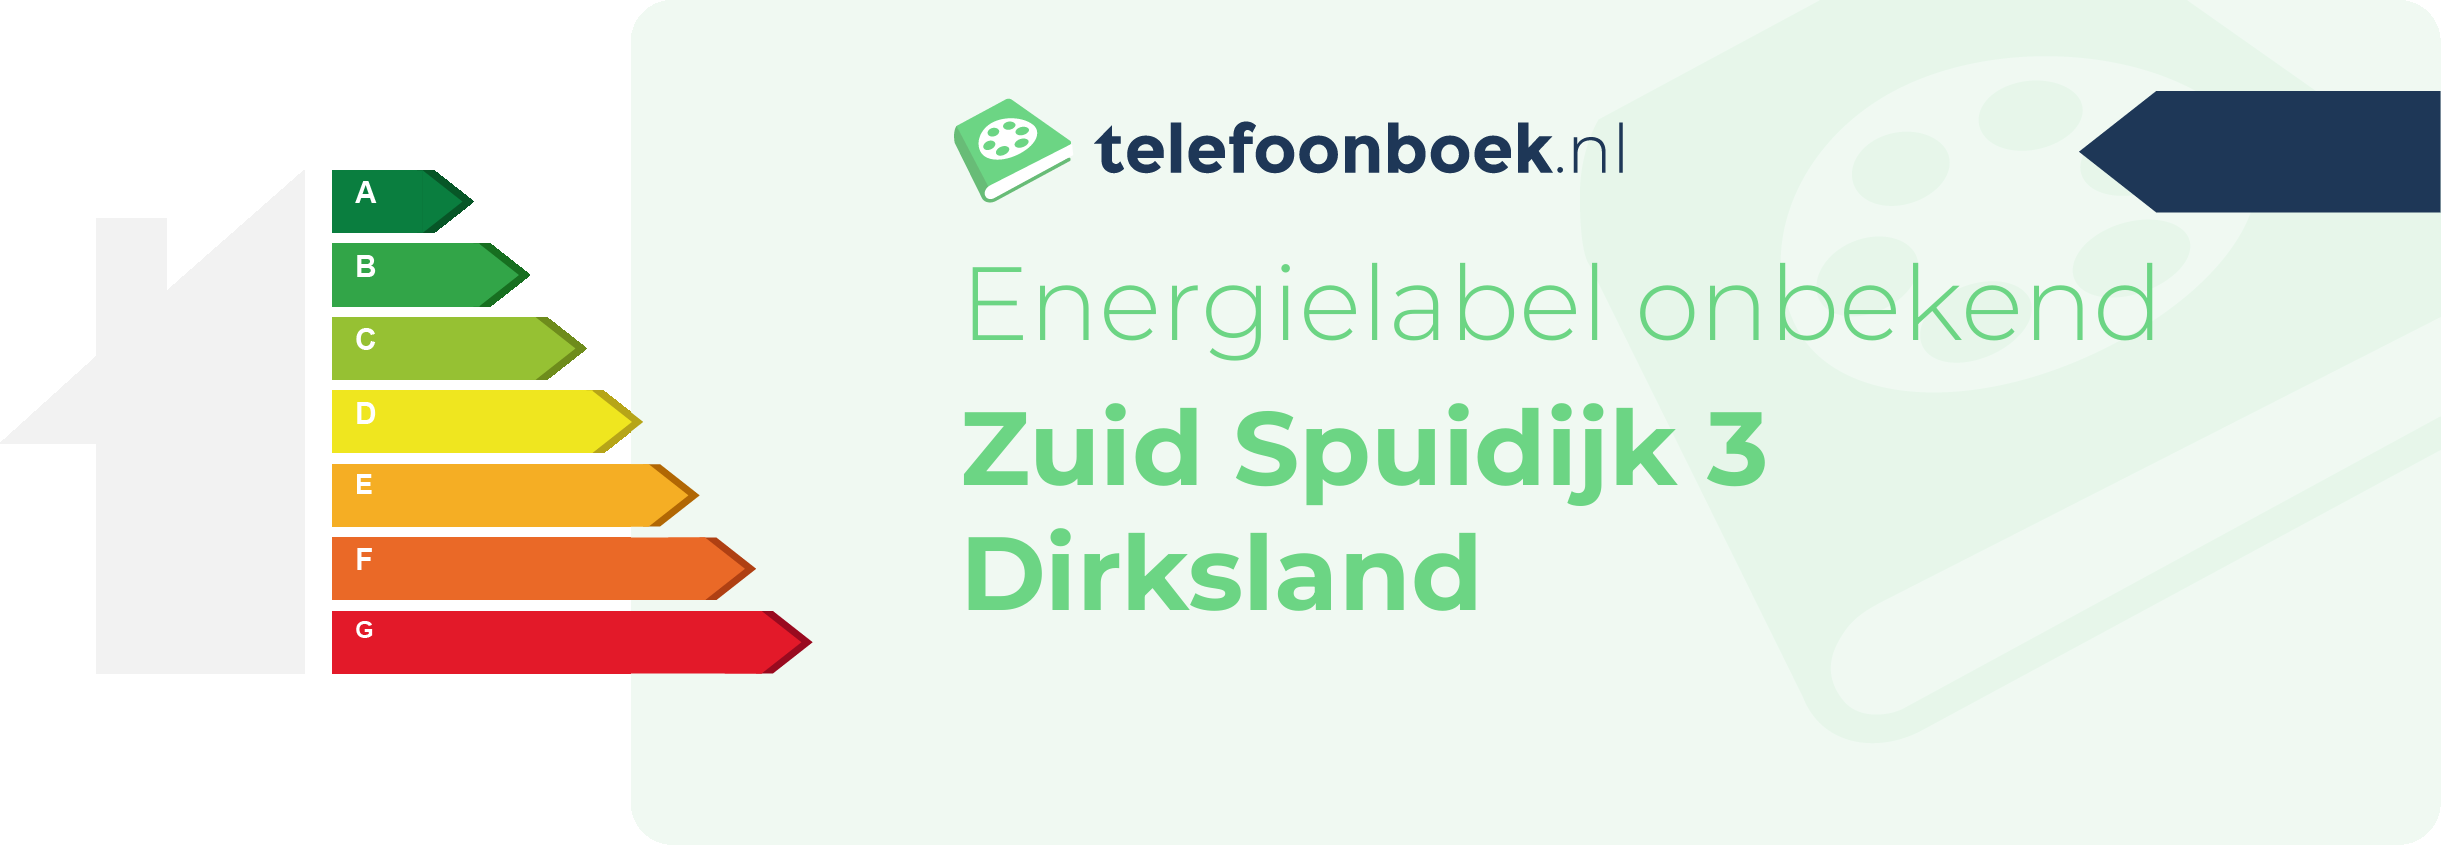 Energielabel Zuid Spuidijk 3 Dirksland